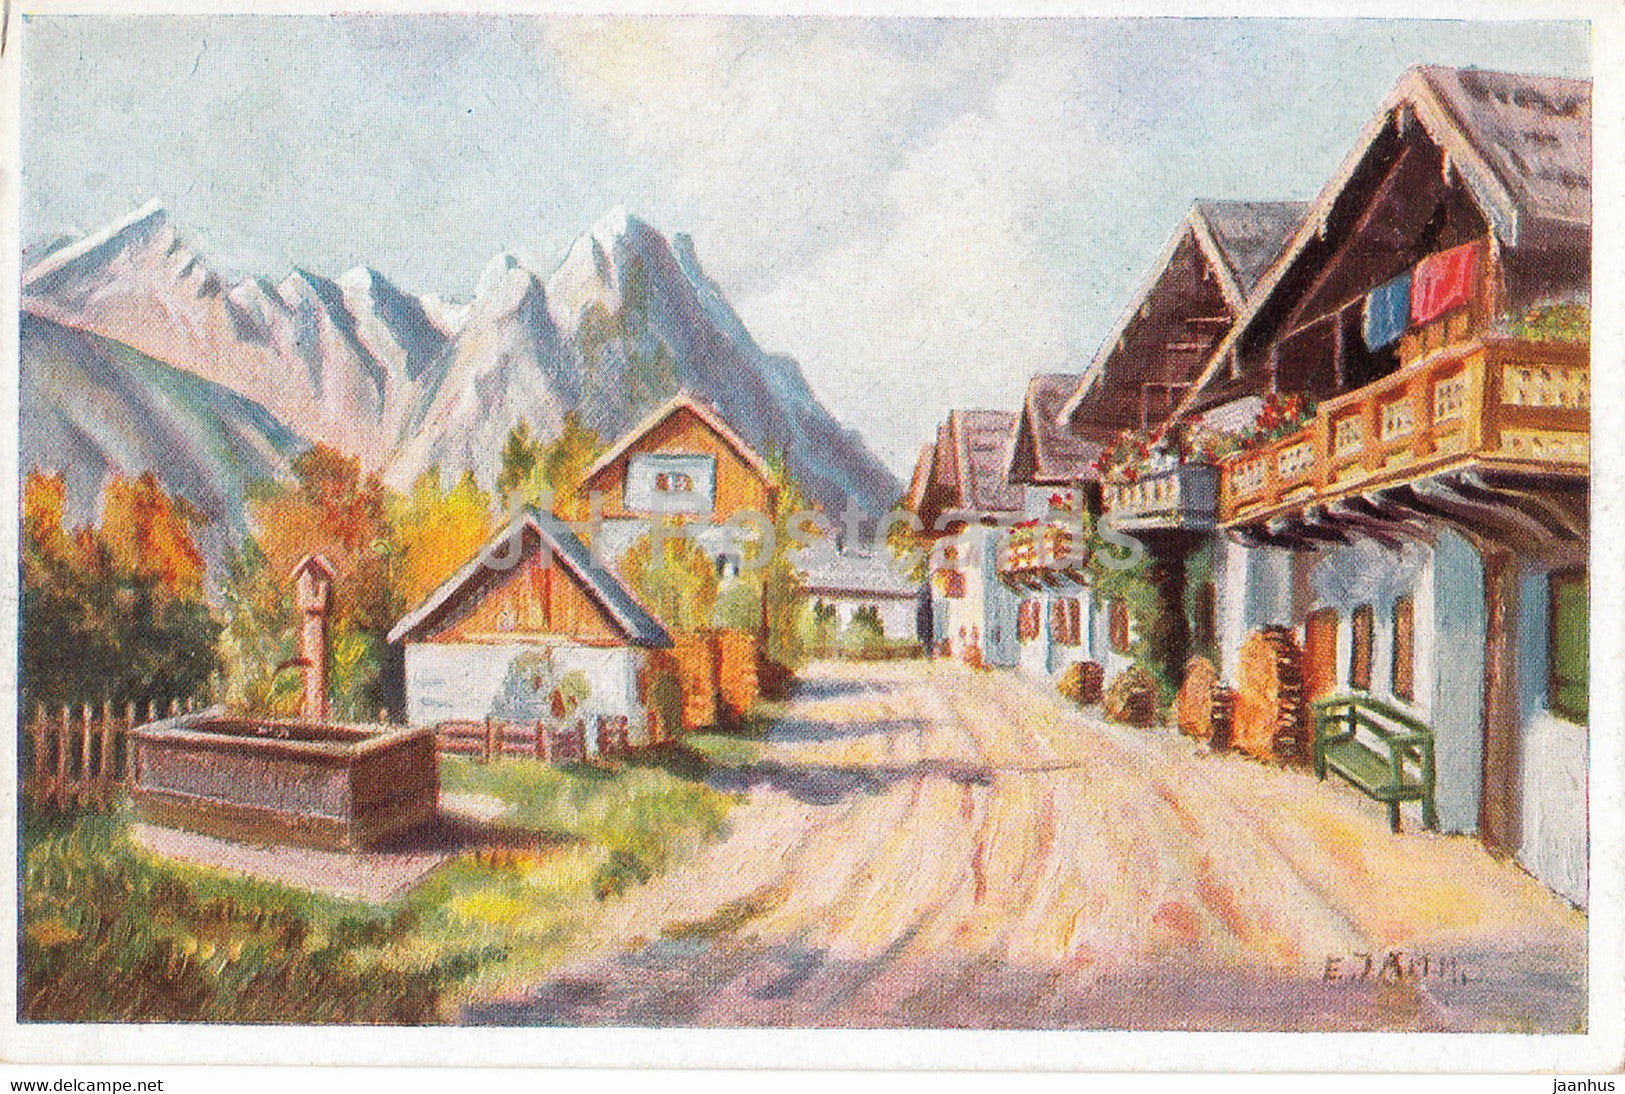 painting by F. Jahn - Fruhlingsstrasse in Garmisch - German art - 51476 - old postcard - Germany - unused - JH Postcards